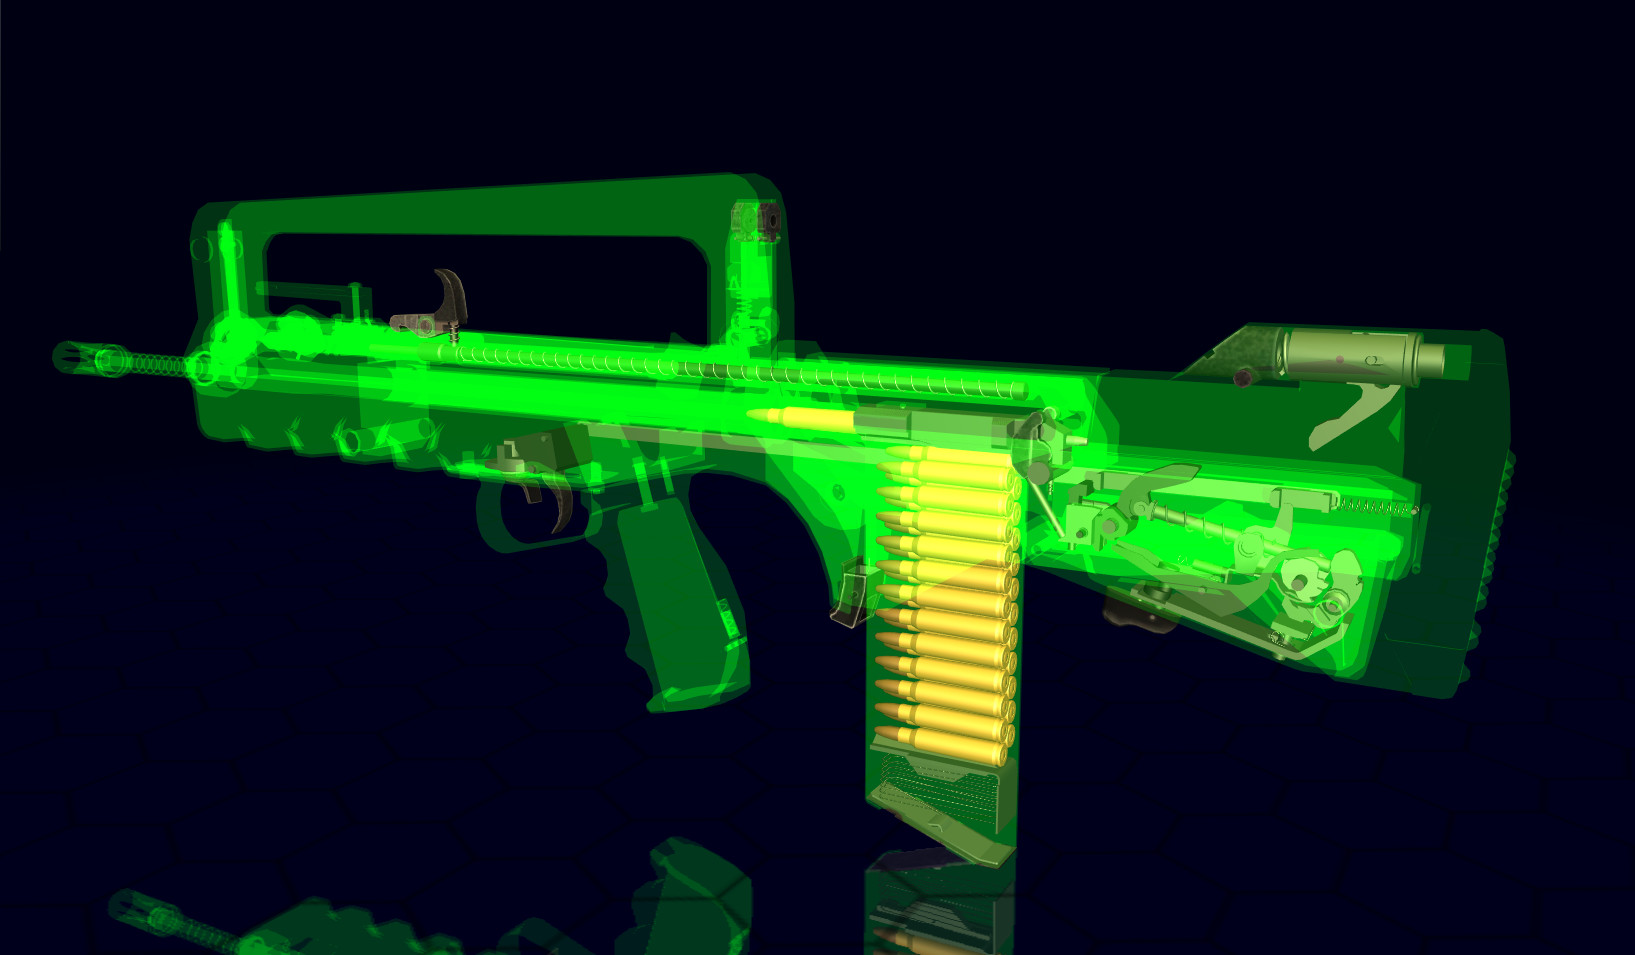 World of Guns VR: Assault Rifles Pack #1 Featured Screenshot #1